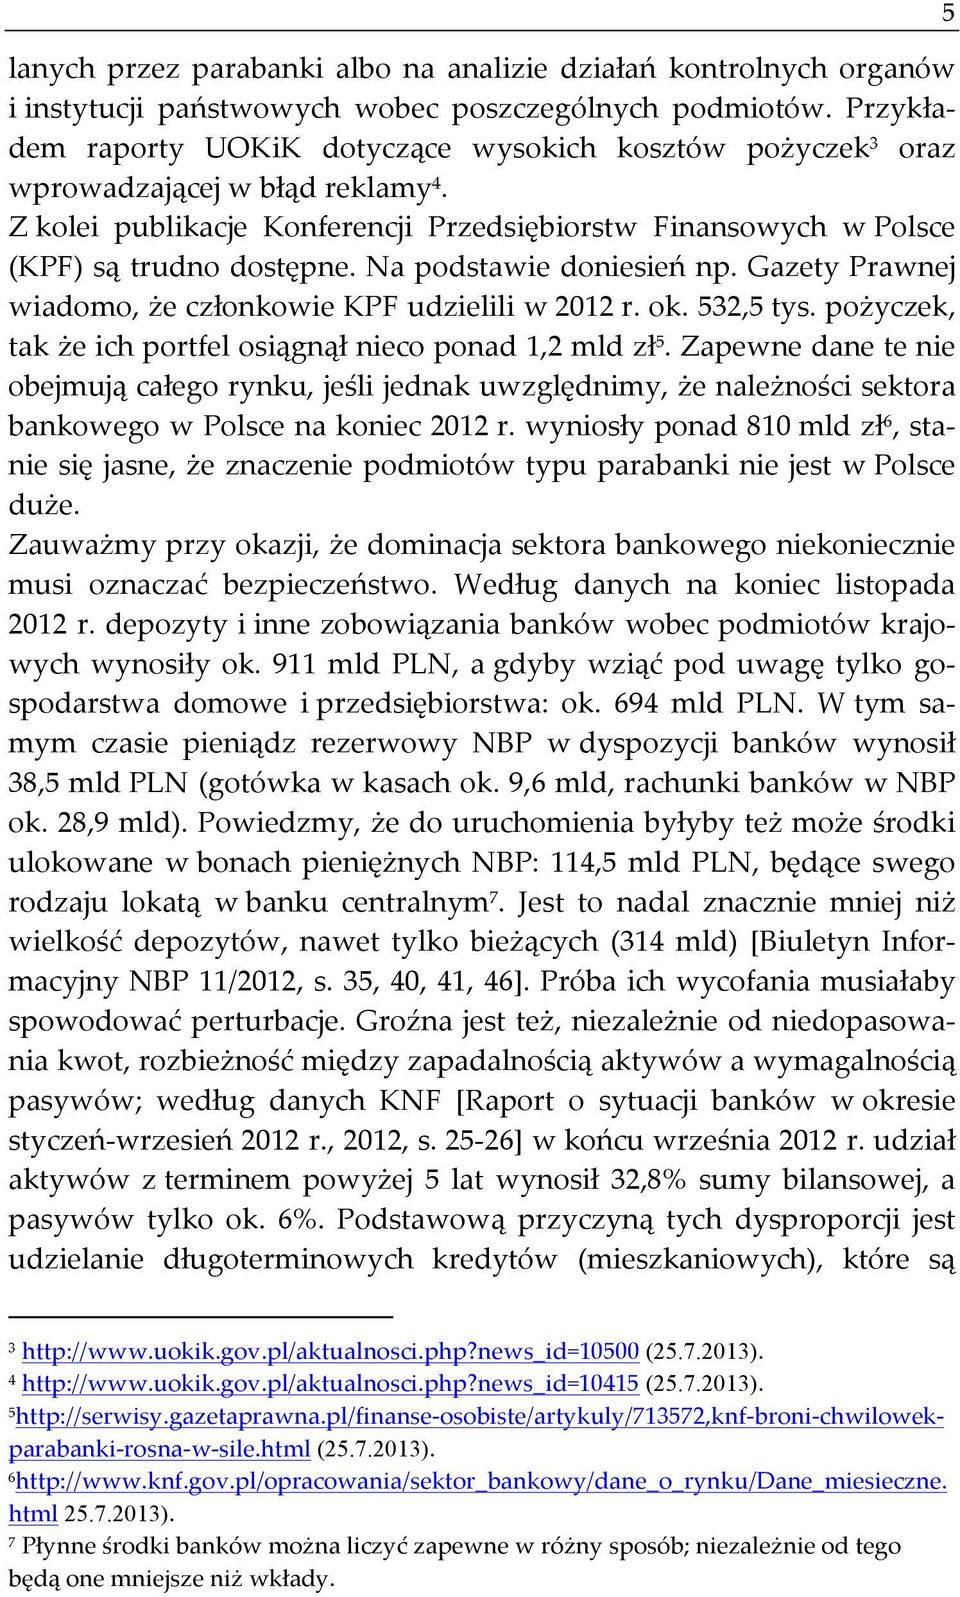 Na podstawie doniesień np. Gazety Prawnej wiadomo, że członkowie KPF udzielili w 2012 r. ok. 532,5 tys. pożyczek, tak że ich portfel osiągnął nieco ponad 1,2 mld zł 5.